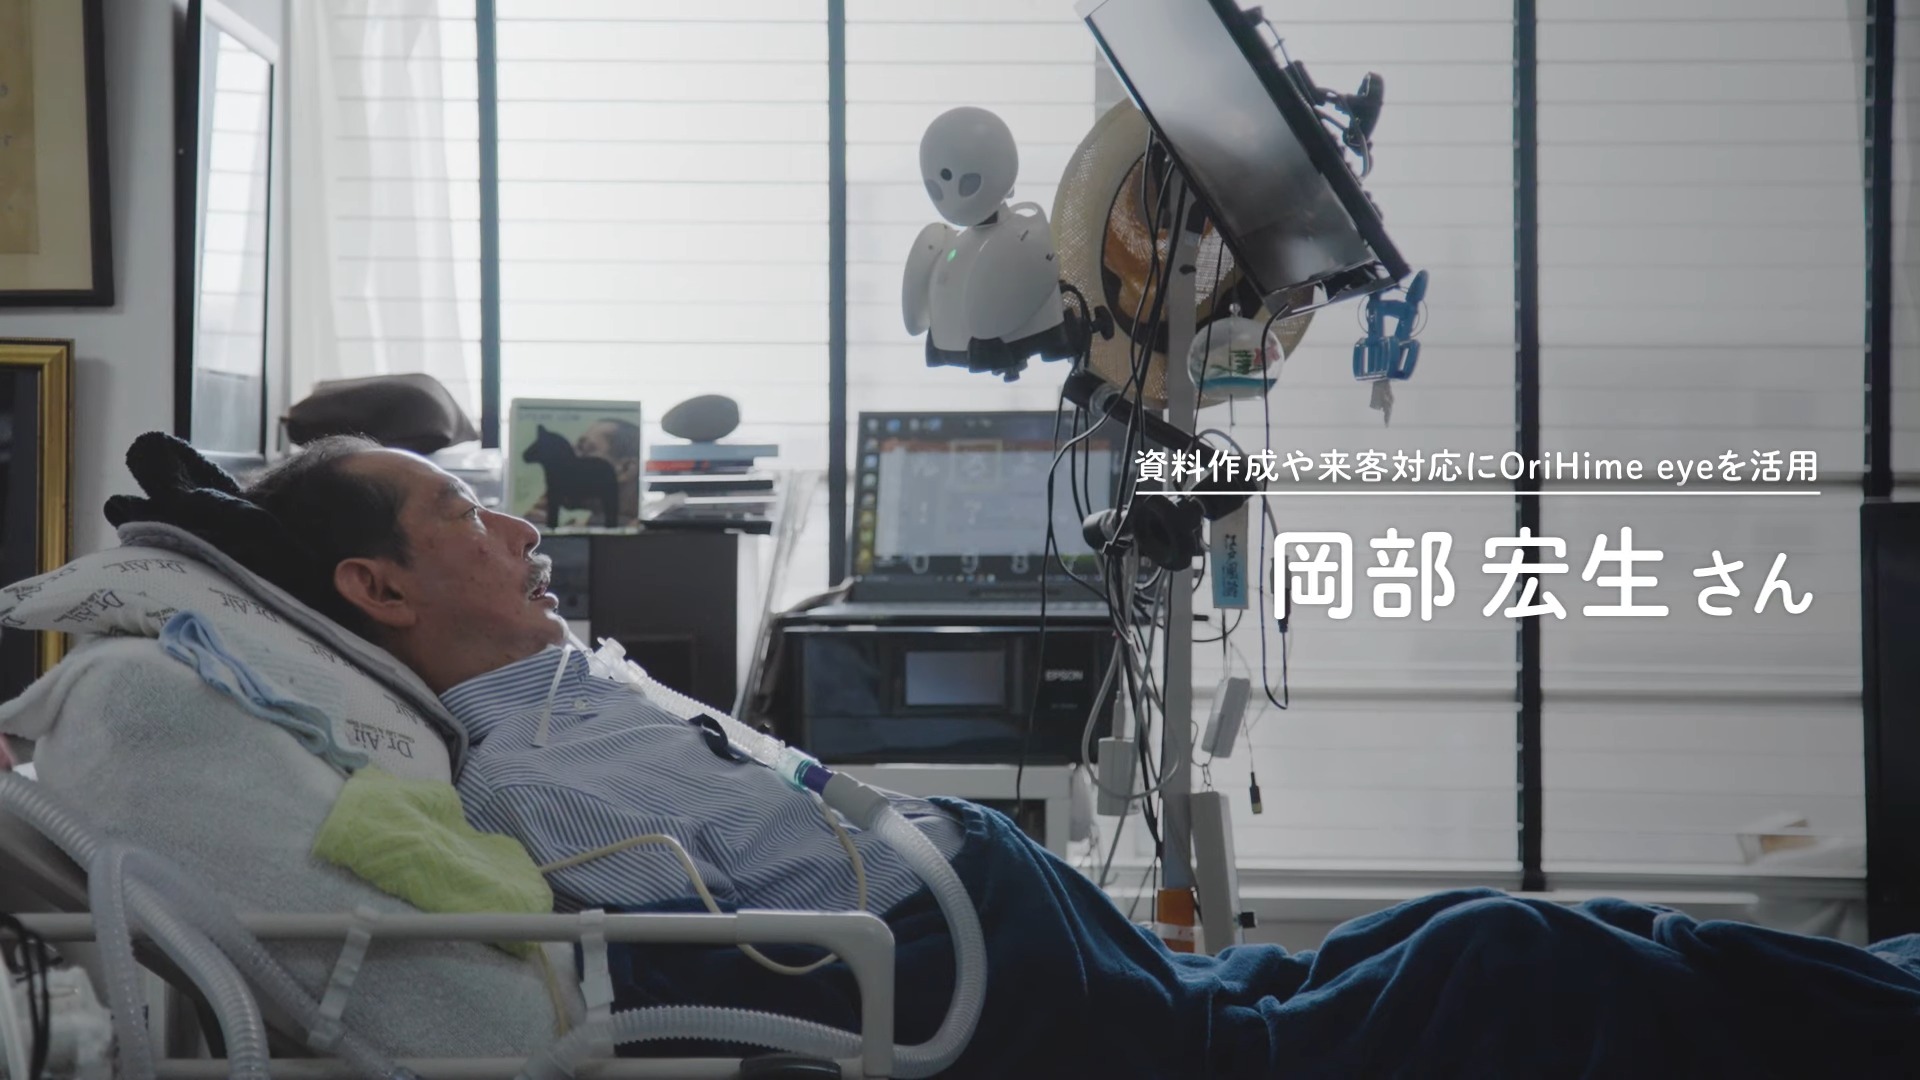 日本機器人餐廳使用遠端操控技術讓殘疾人士也可以當服務生工作賺錢 - 電腦王阿達